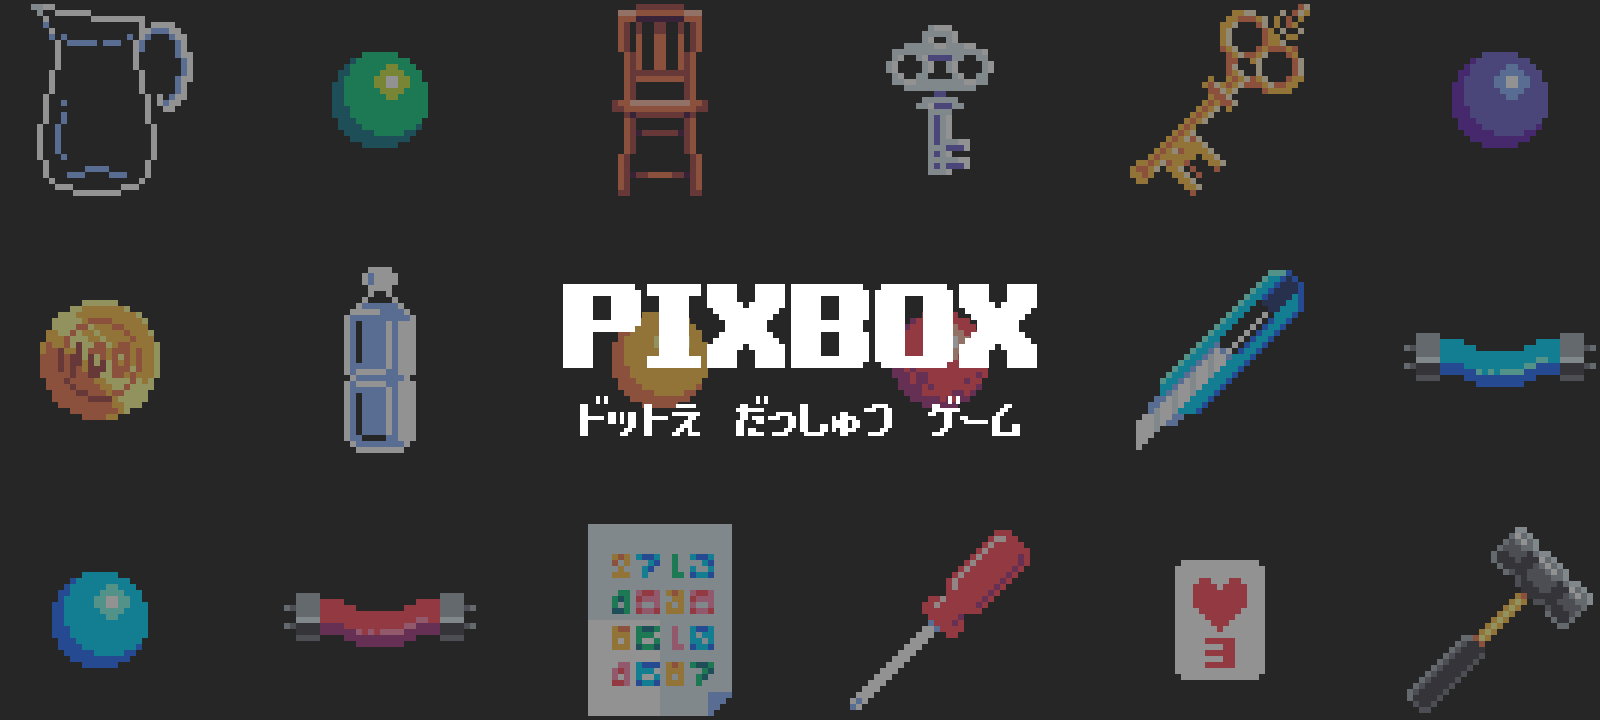 ドット絵の脱出ゲーム Pixbox をリリースしました Ryo620 Design Development